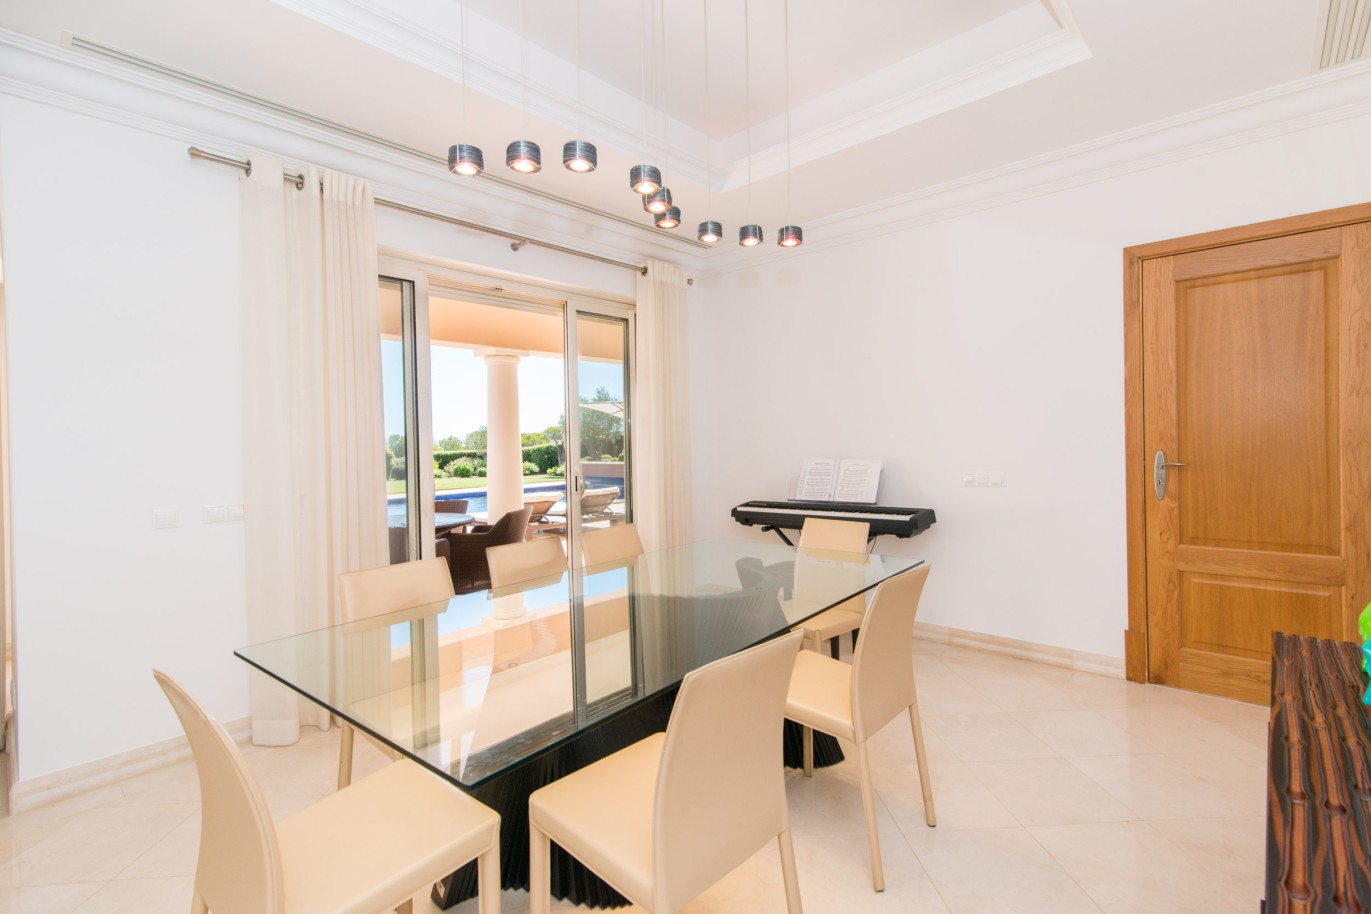 5 Bedroom Villa with pool for sale in Vila Real de Santo Antonio, Algarve_215678